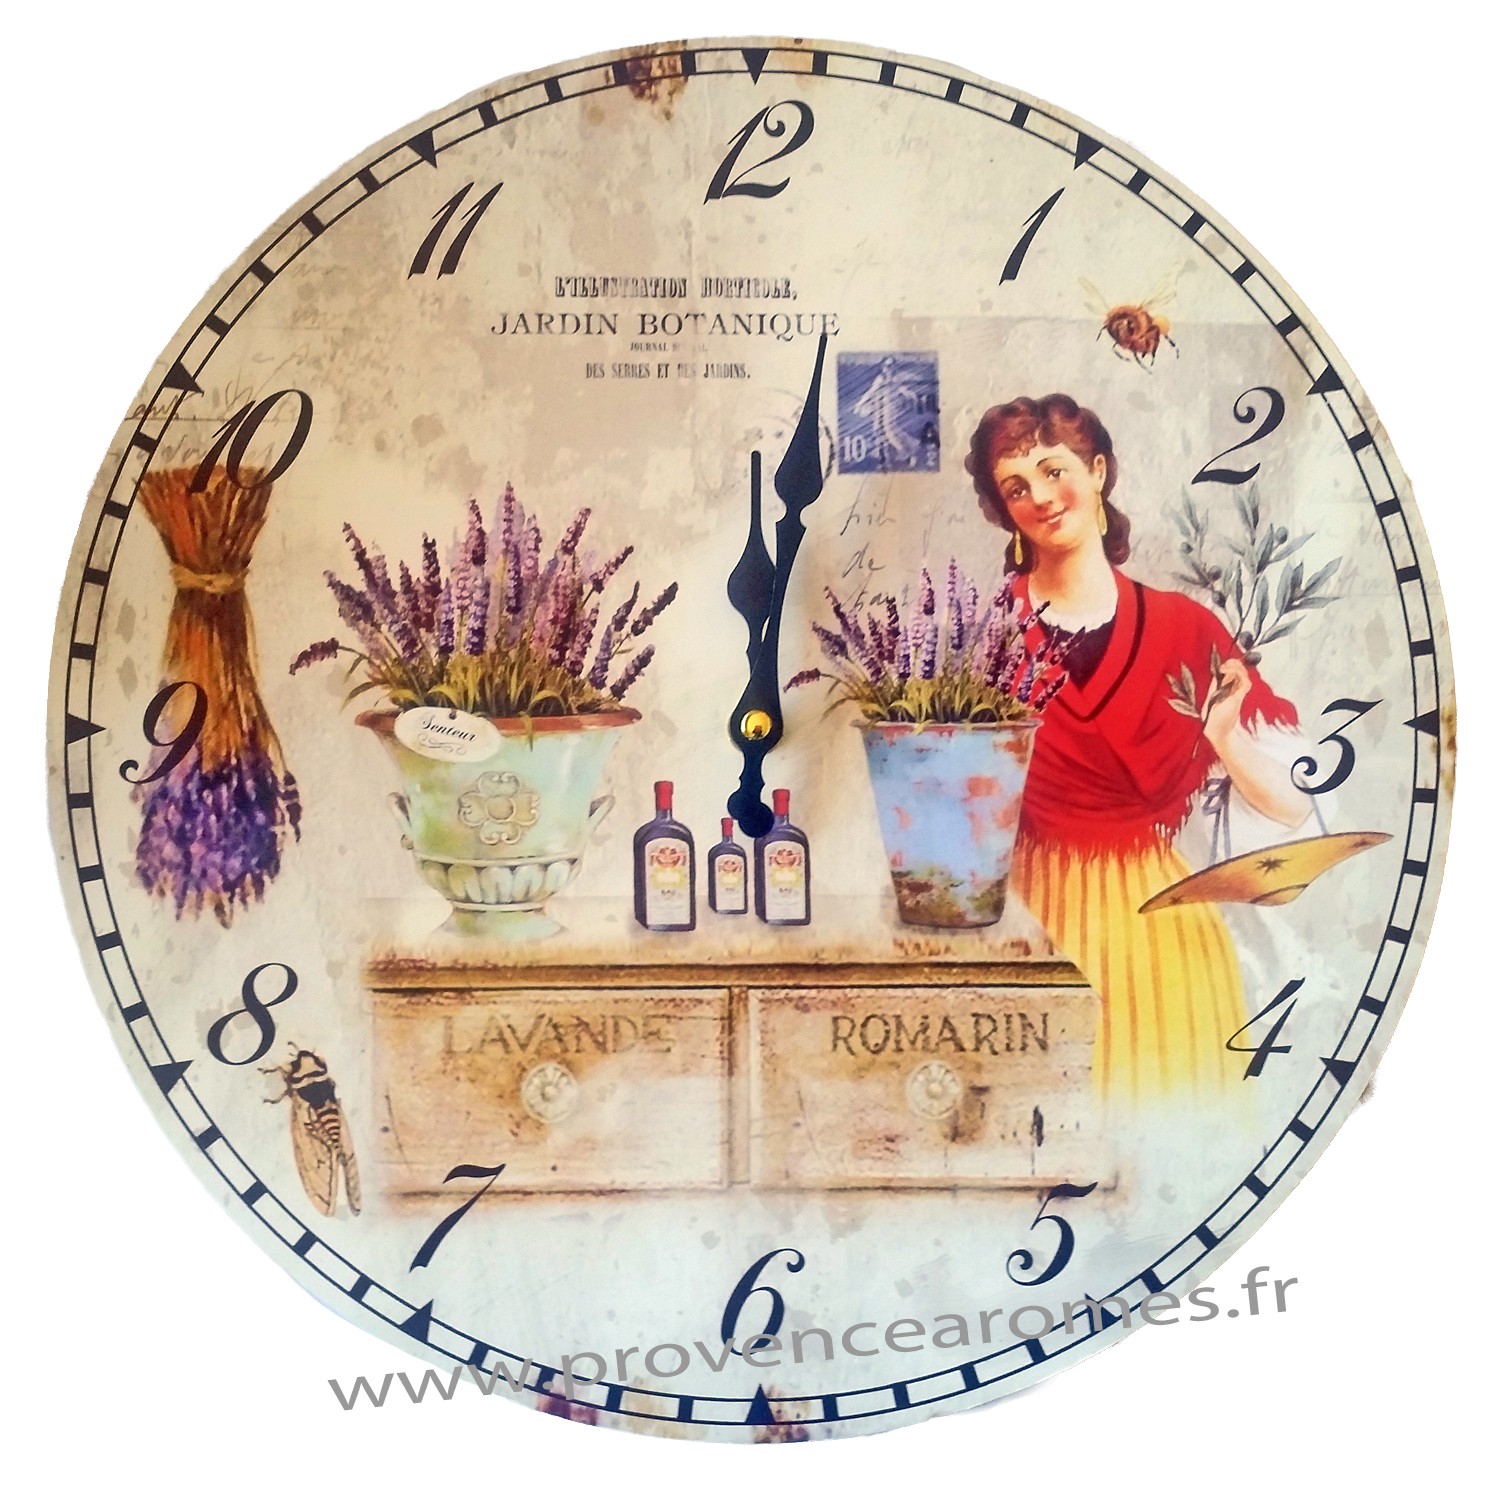 Horloge aimantée HERBES DE PROVENCE collection MYCLOCK - Provence Arômes  Tendance sud